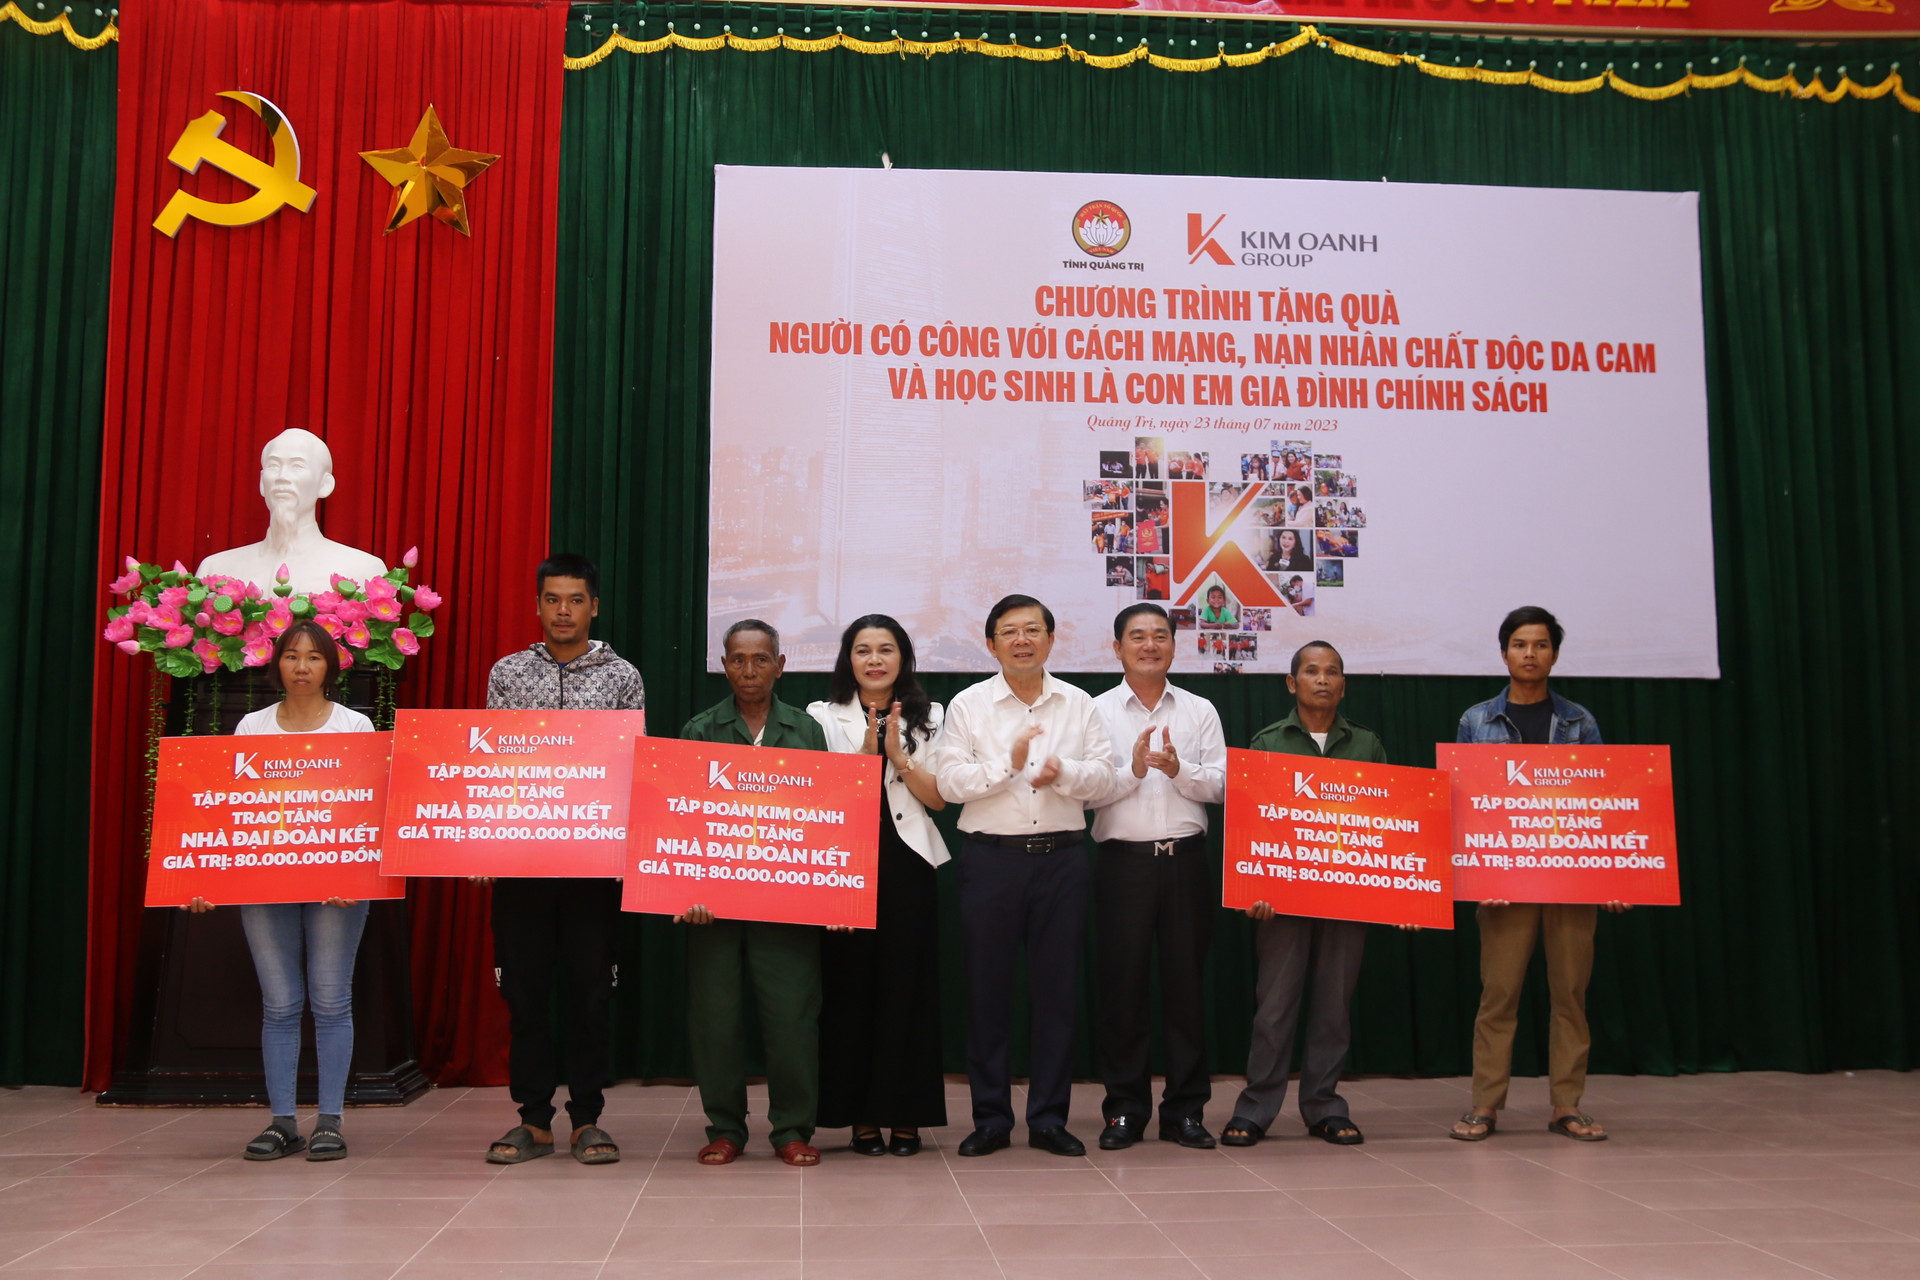 Quỹ từ thiện Kim Oanh trao biểu trưng nhà Đại đoàn kết cho các gia đình.